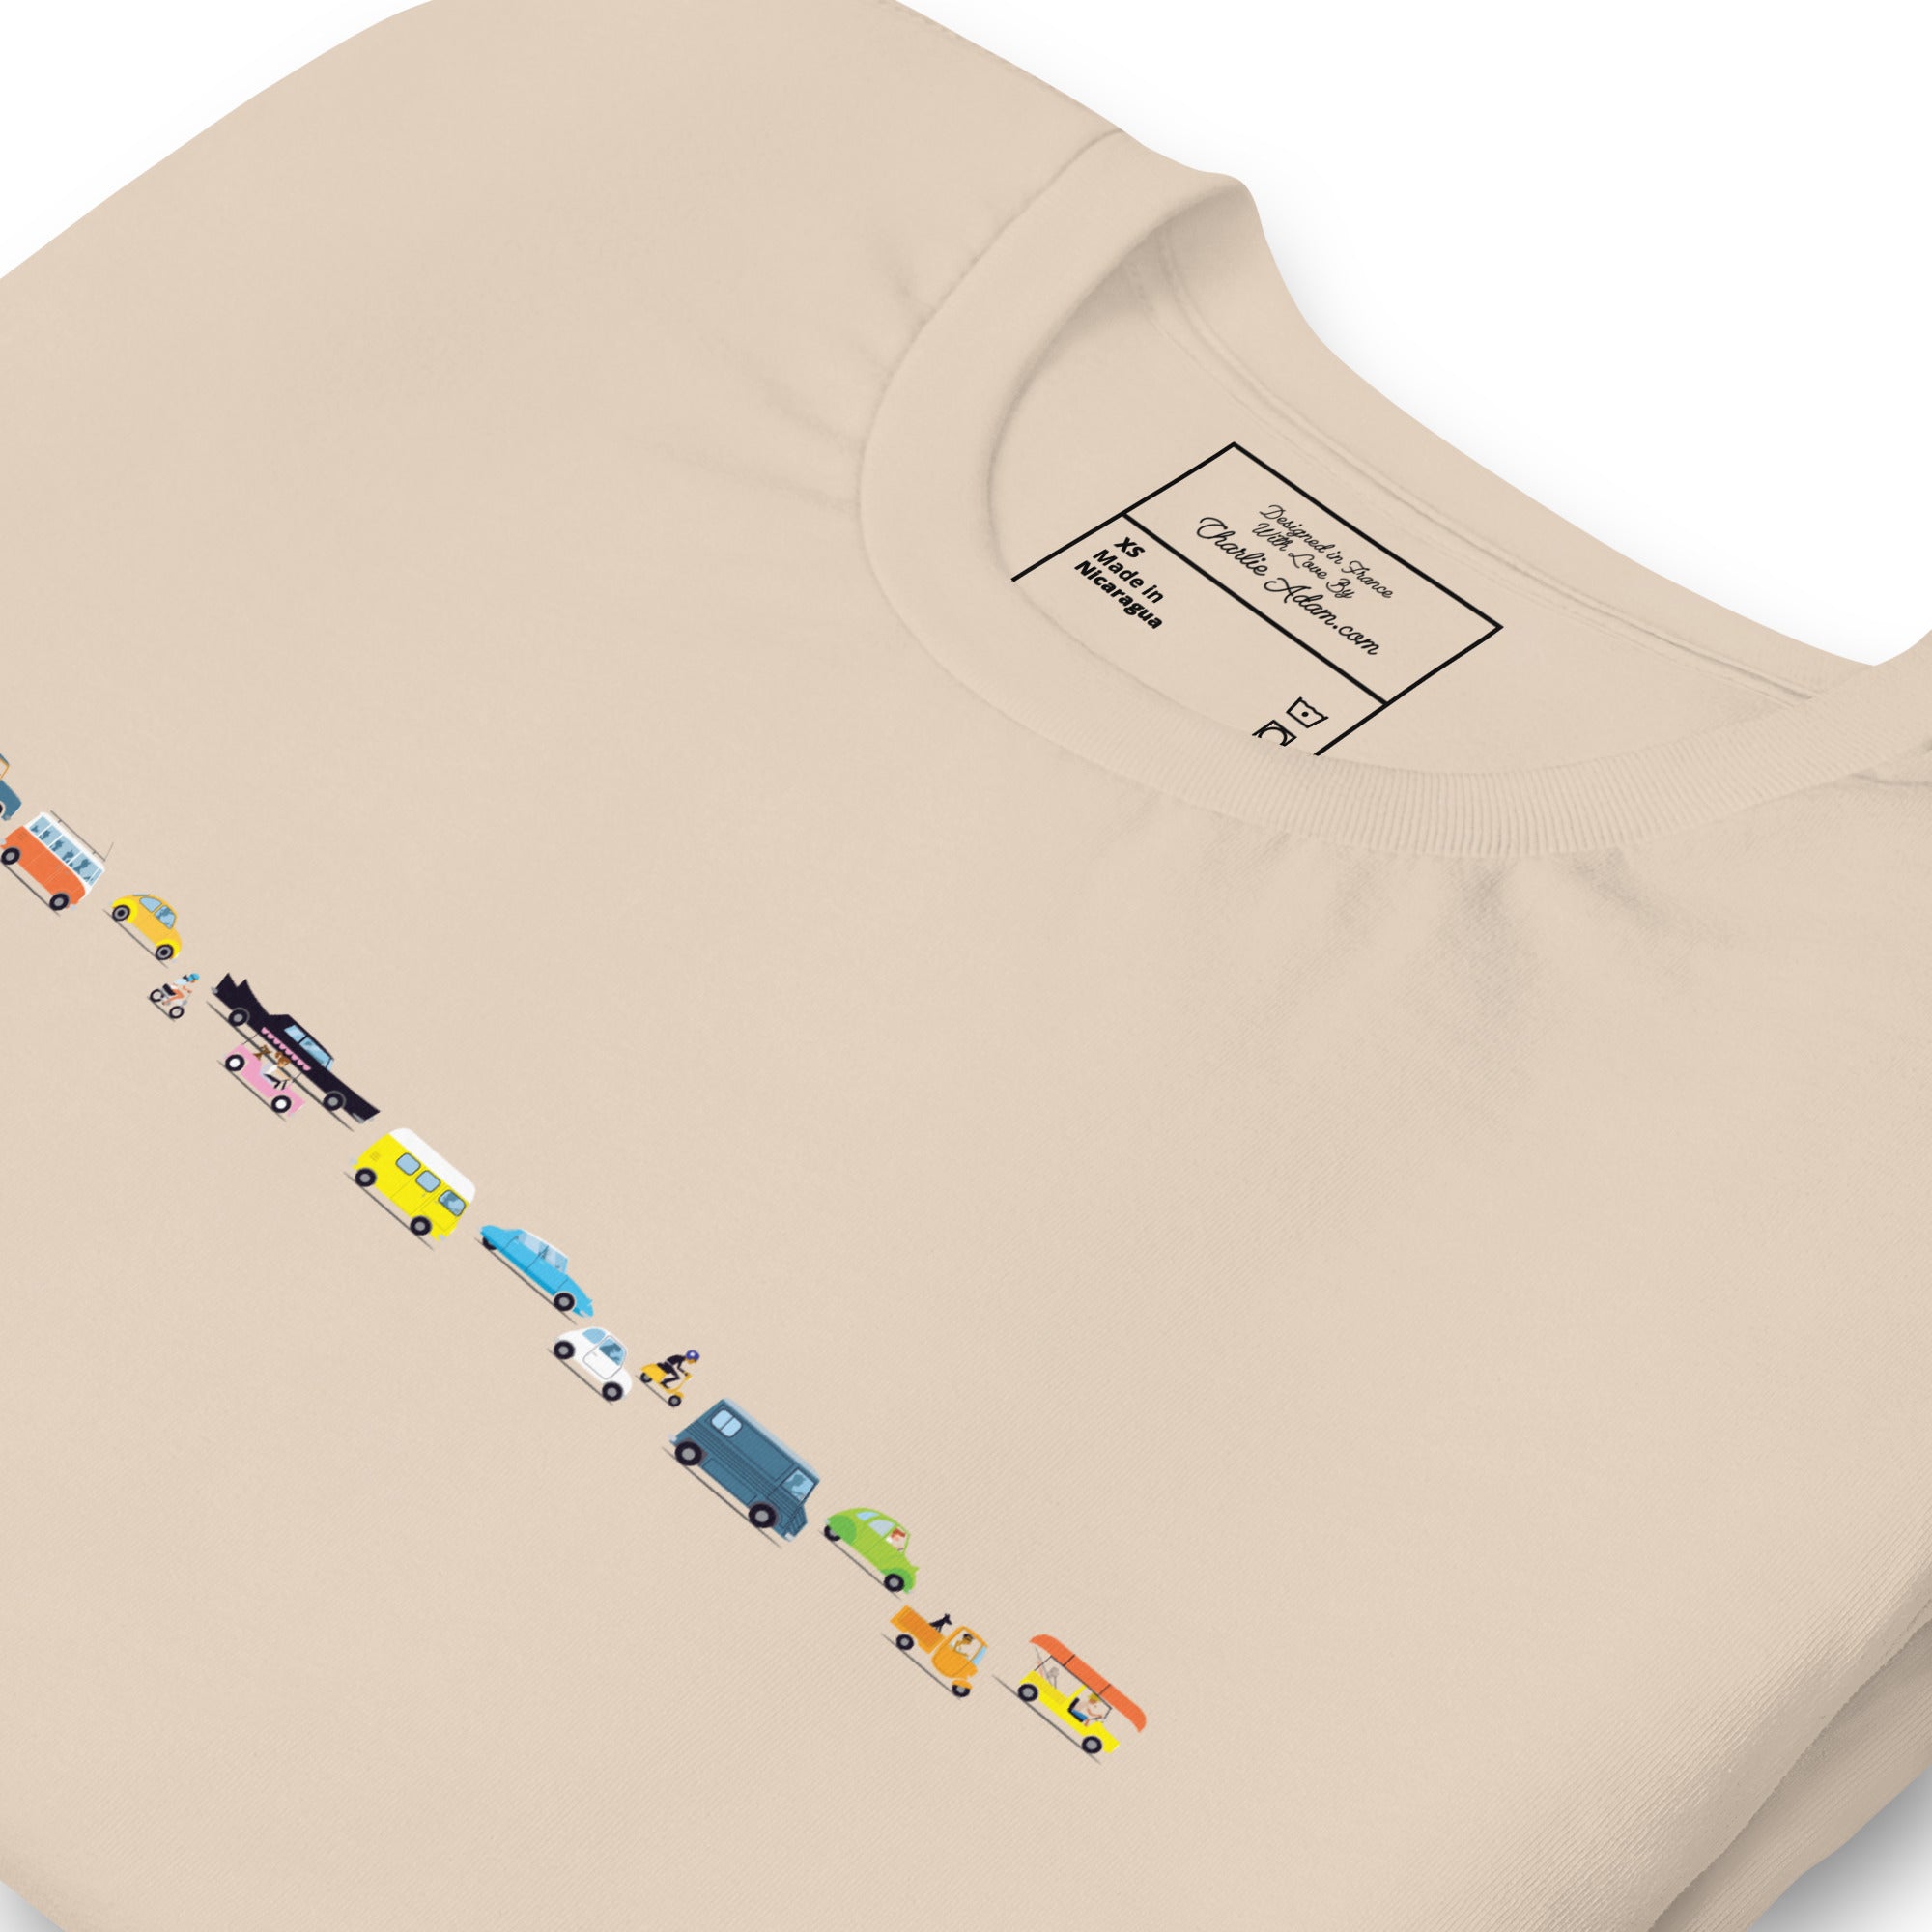 T-shirt en coton unisexe Vintage Cars Traffic Jam sur couleurs claires